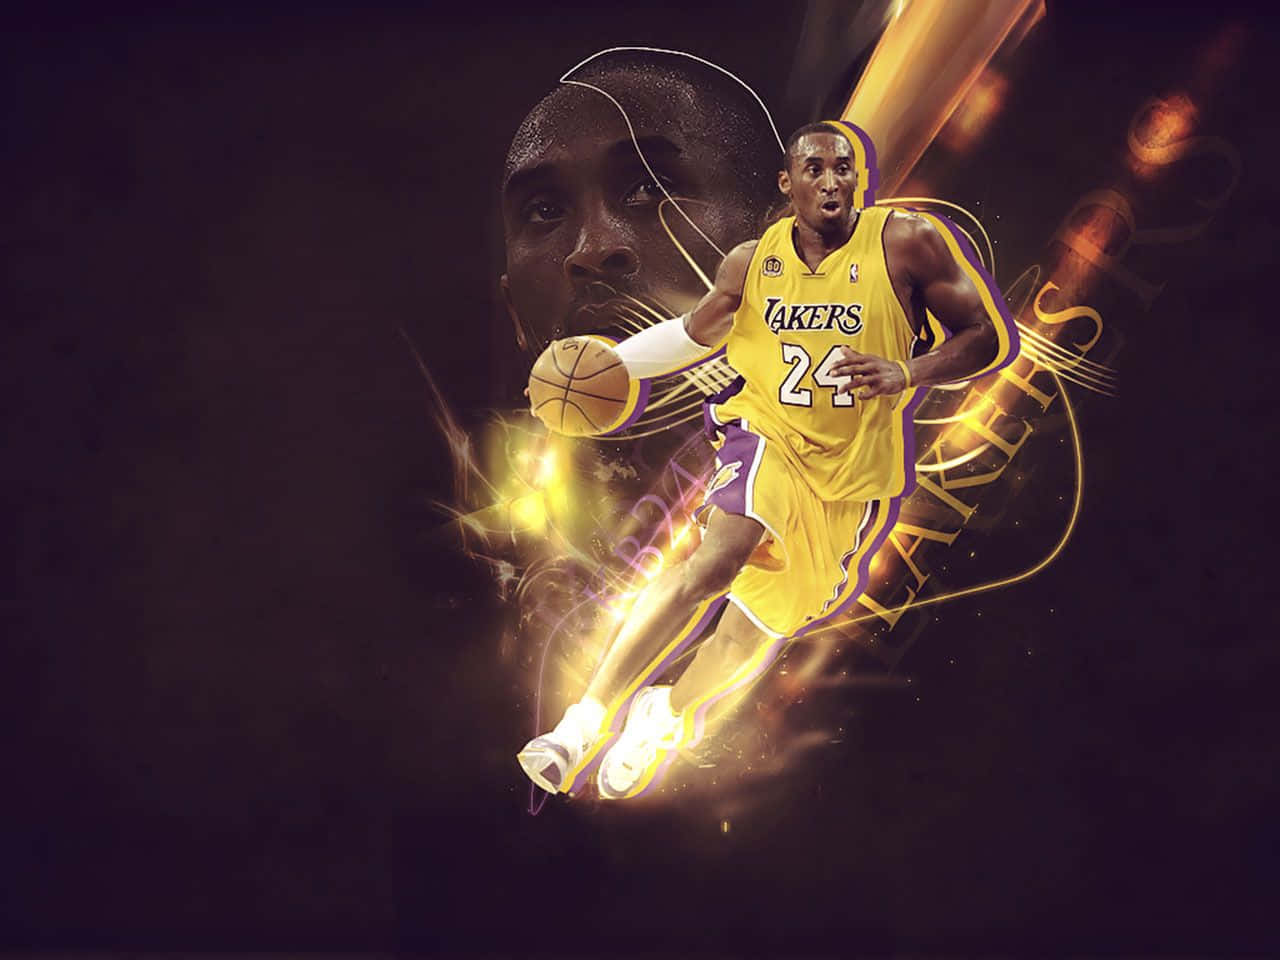 Legendarerbasketballspieler Kobe Bryant